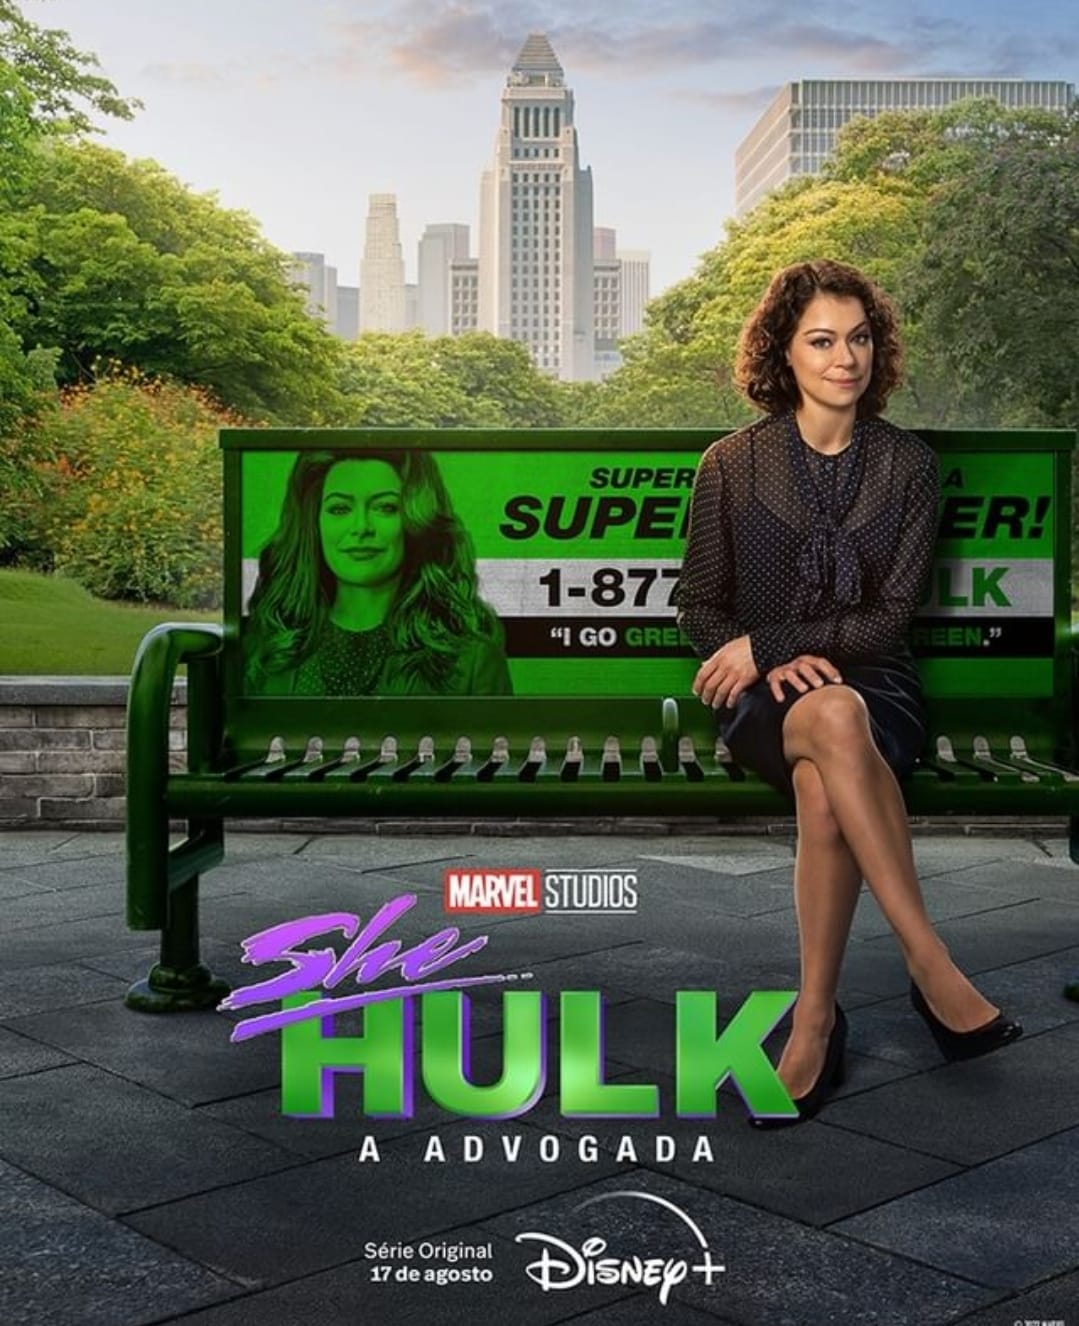 Veja teaser da participação do Demolidor em “Mulher-Hulk” - POPline